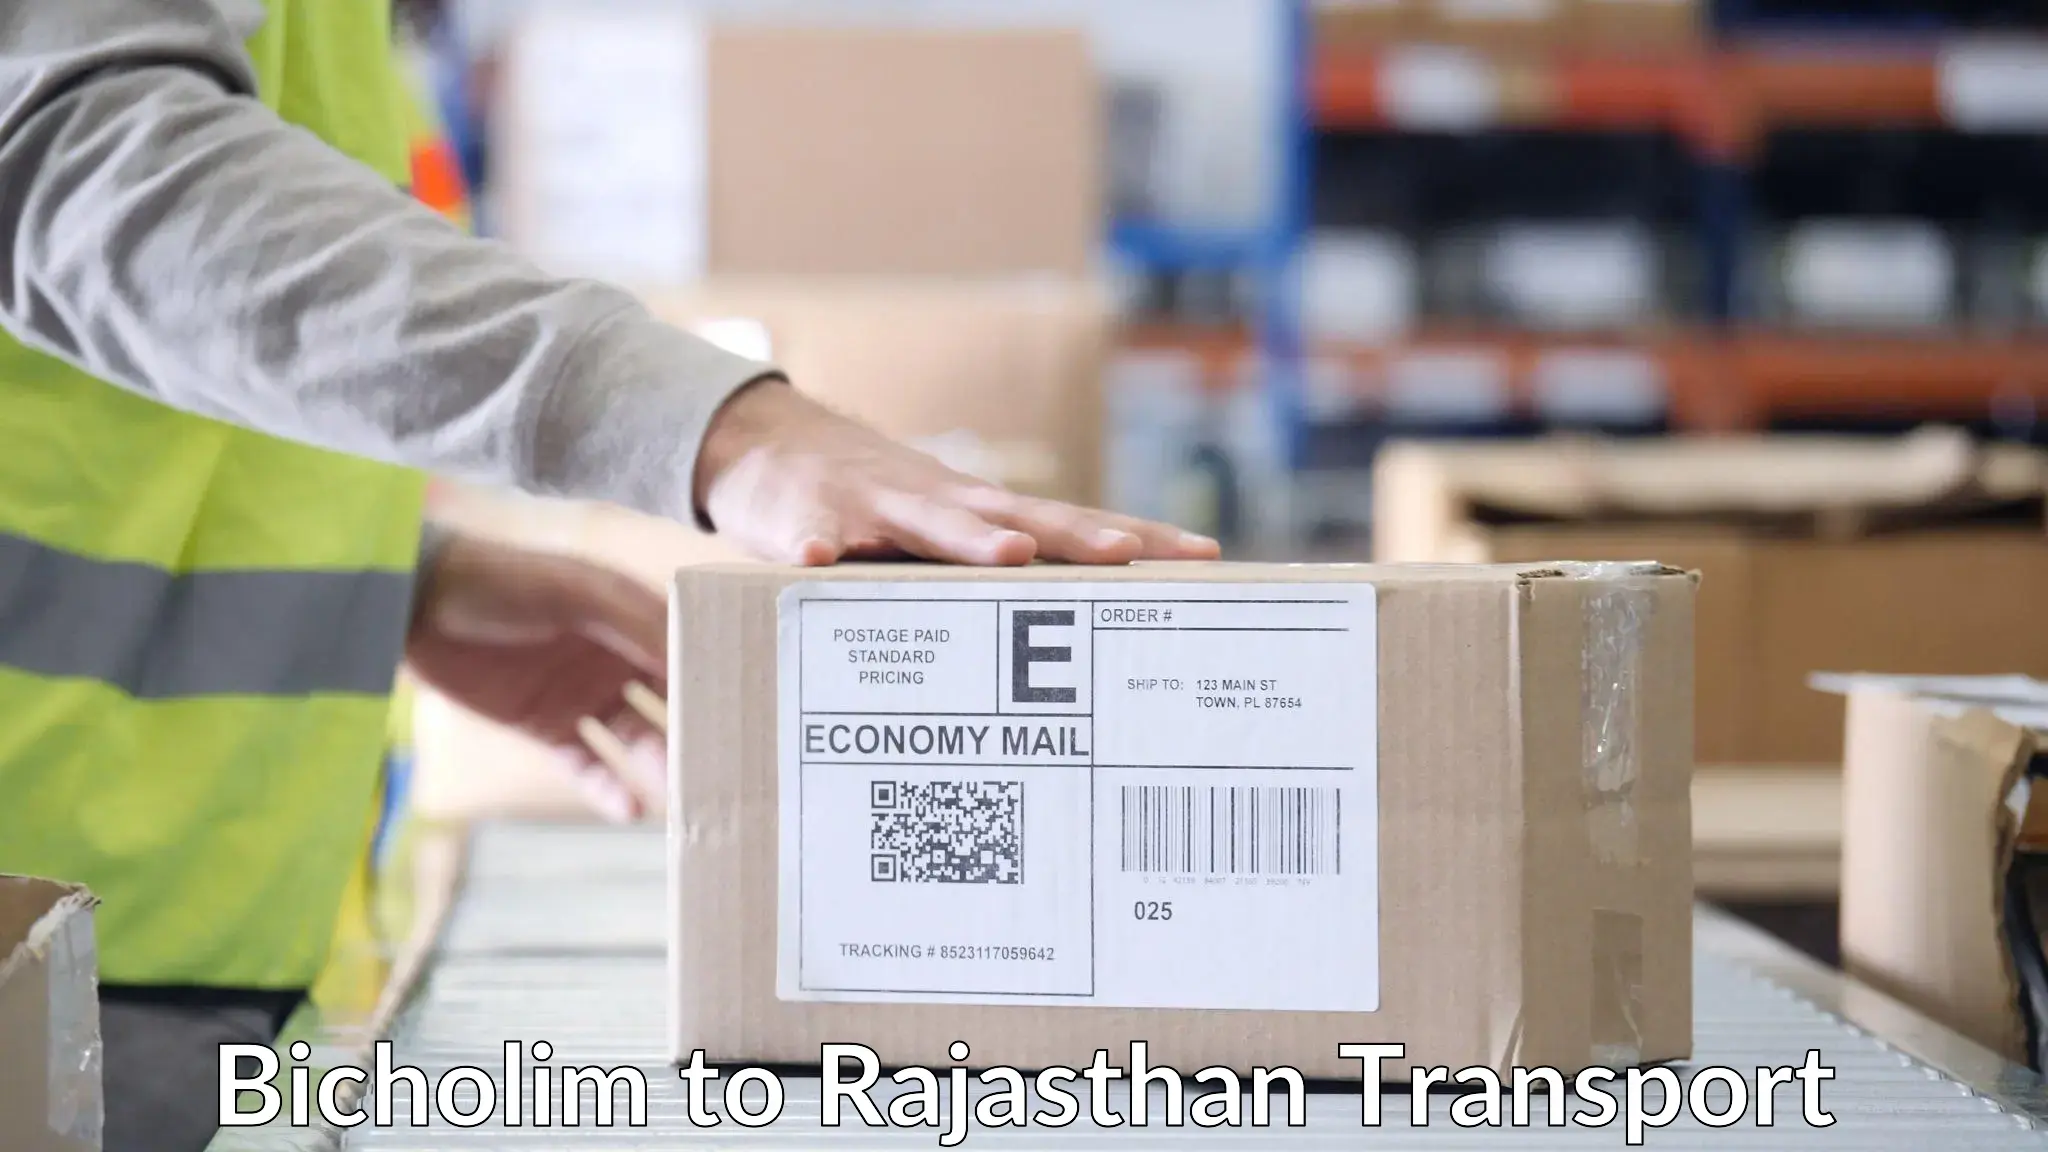 Bike shipping service Bicholim to Rajasthan